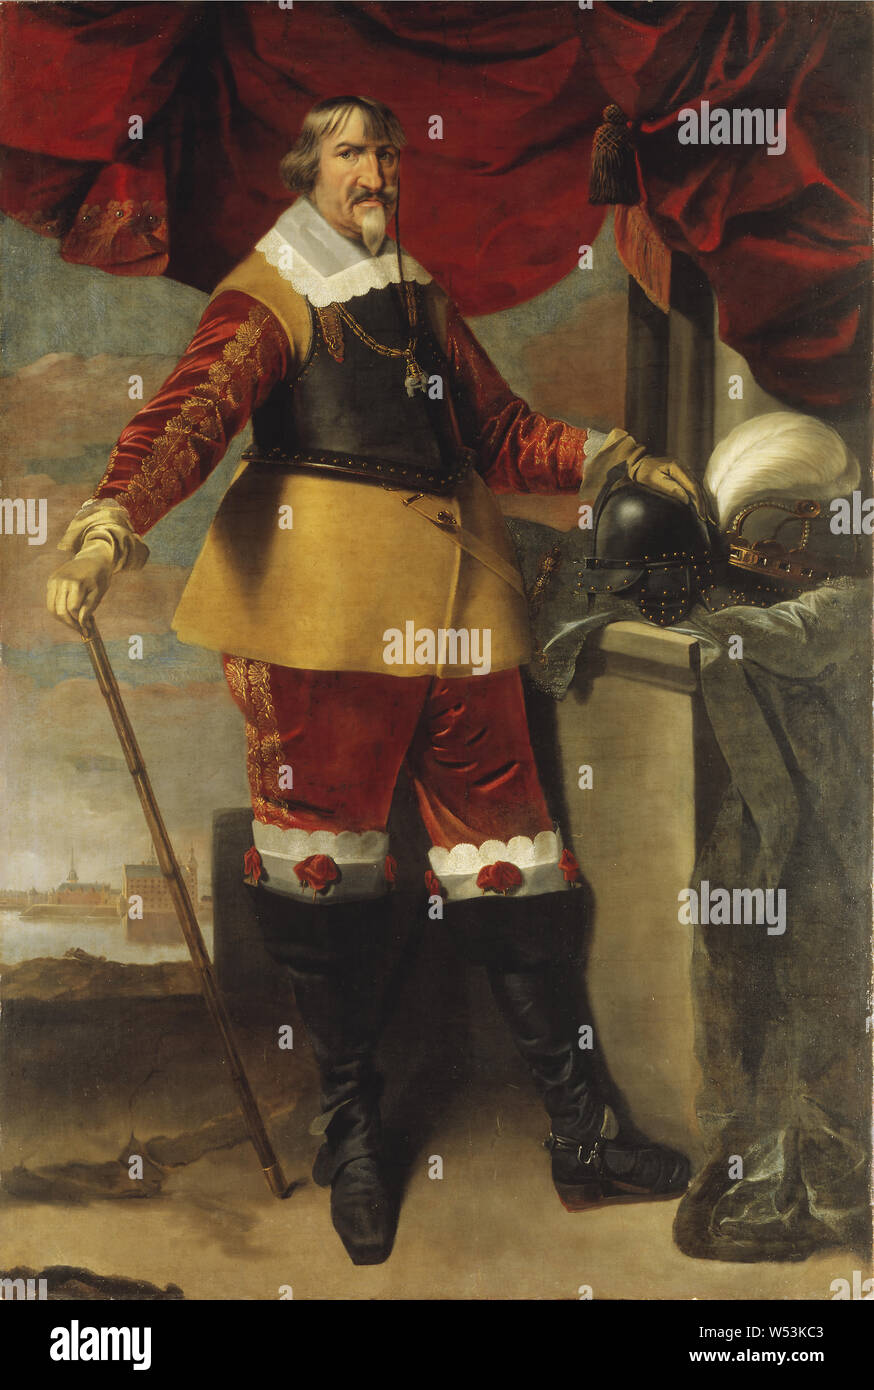 Karel van Mander III., König Christian IV., König Christian IV. von Dänemark, 1577-1648, Christian IV., König von Dänemark und Norwegen, Malerei, zwischen ca. 1643 und ca. 1643, Öl auf Leinwand, Höhe 224 cm (88,1 Zoll), Breite 149 cm (58,6 Zoll) Stockfoto